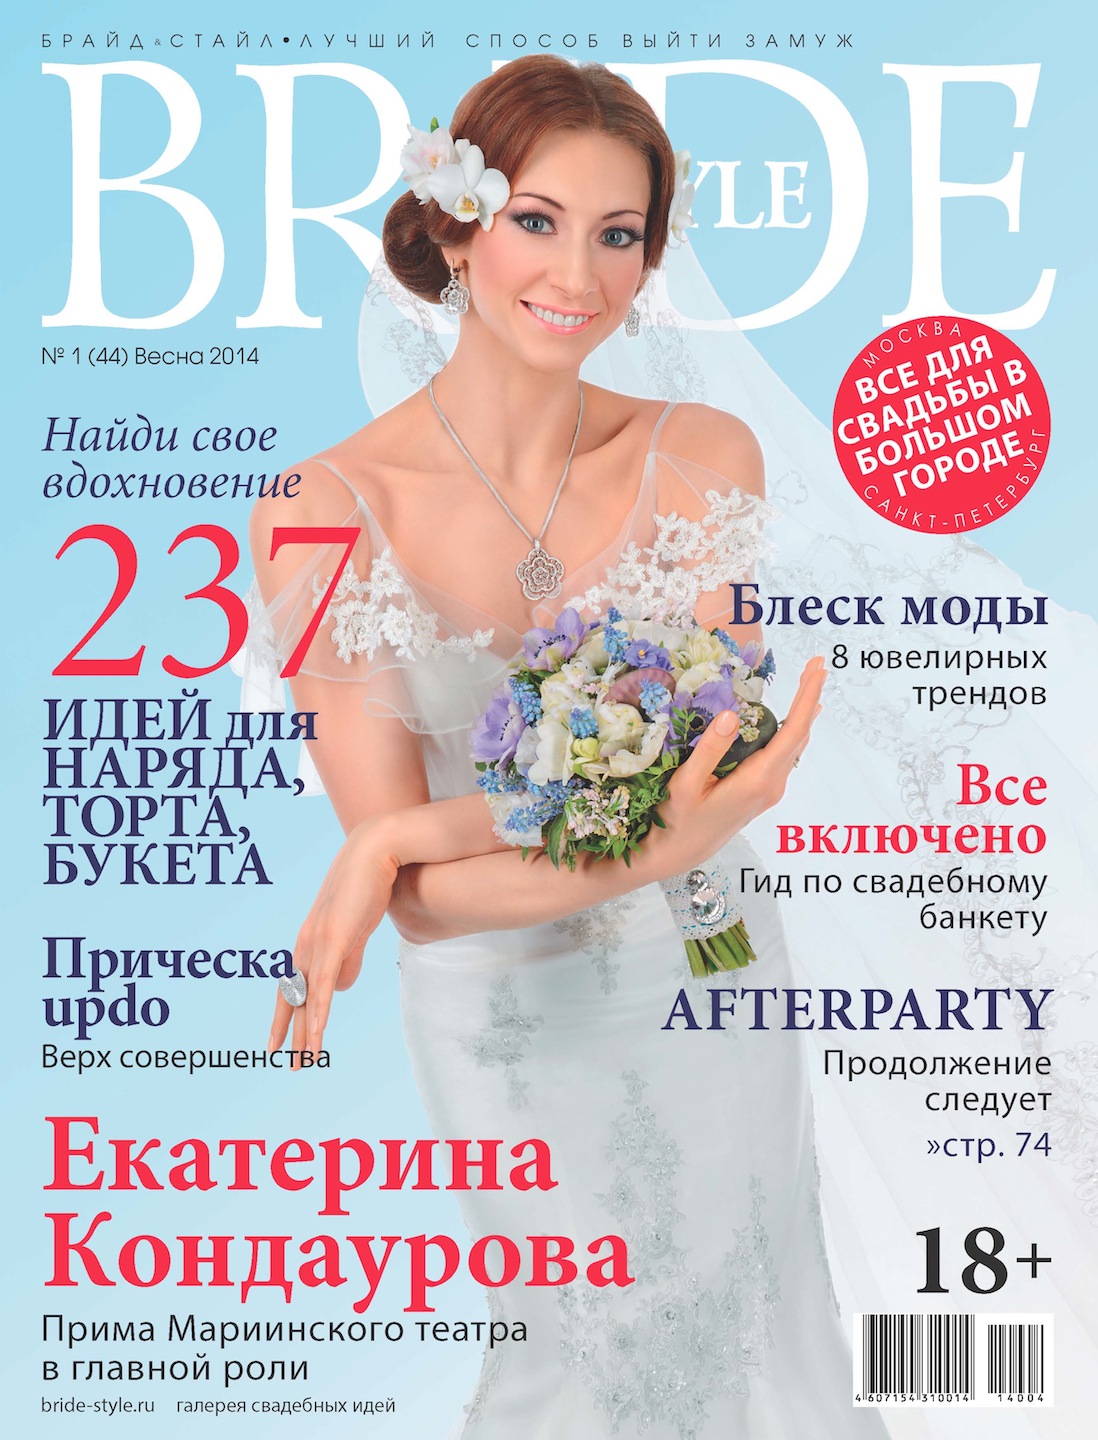 Свадебный журнал BRIDE. Весна 2014